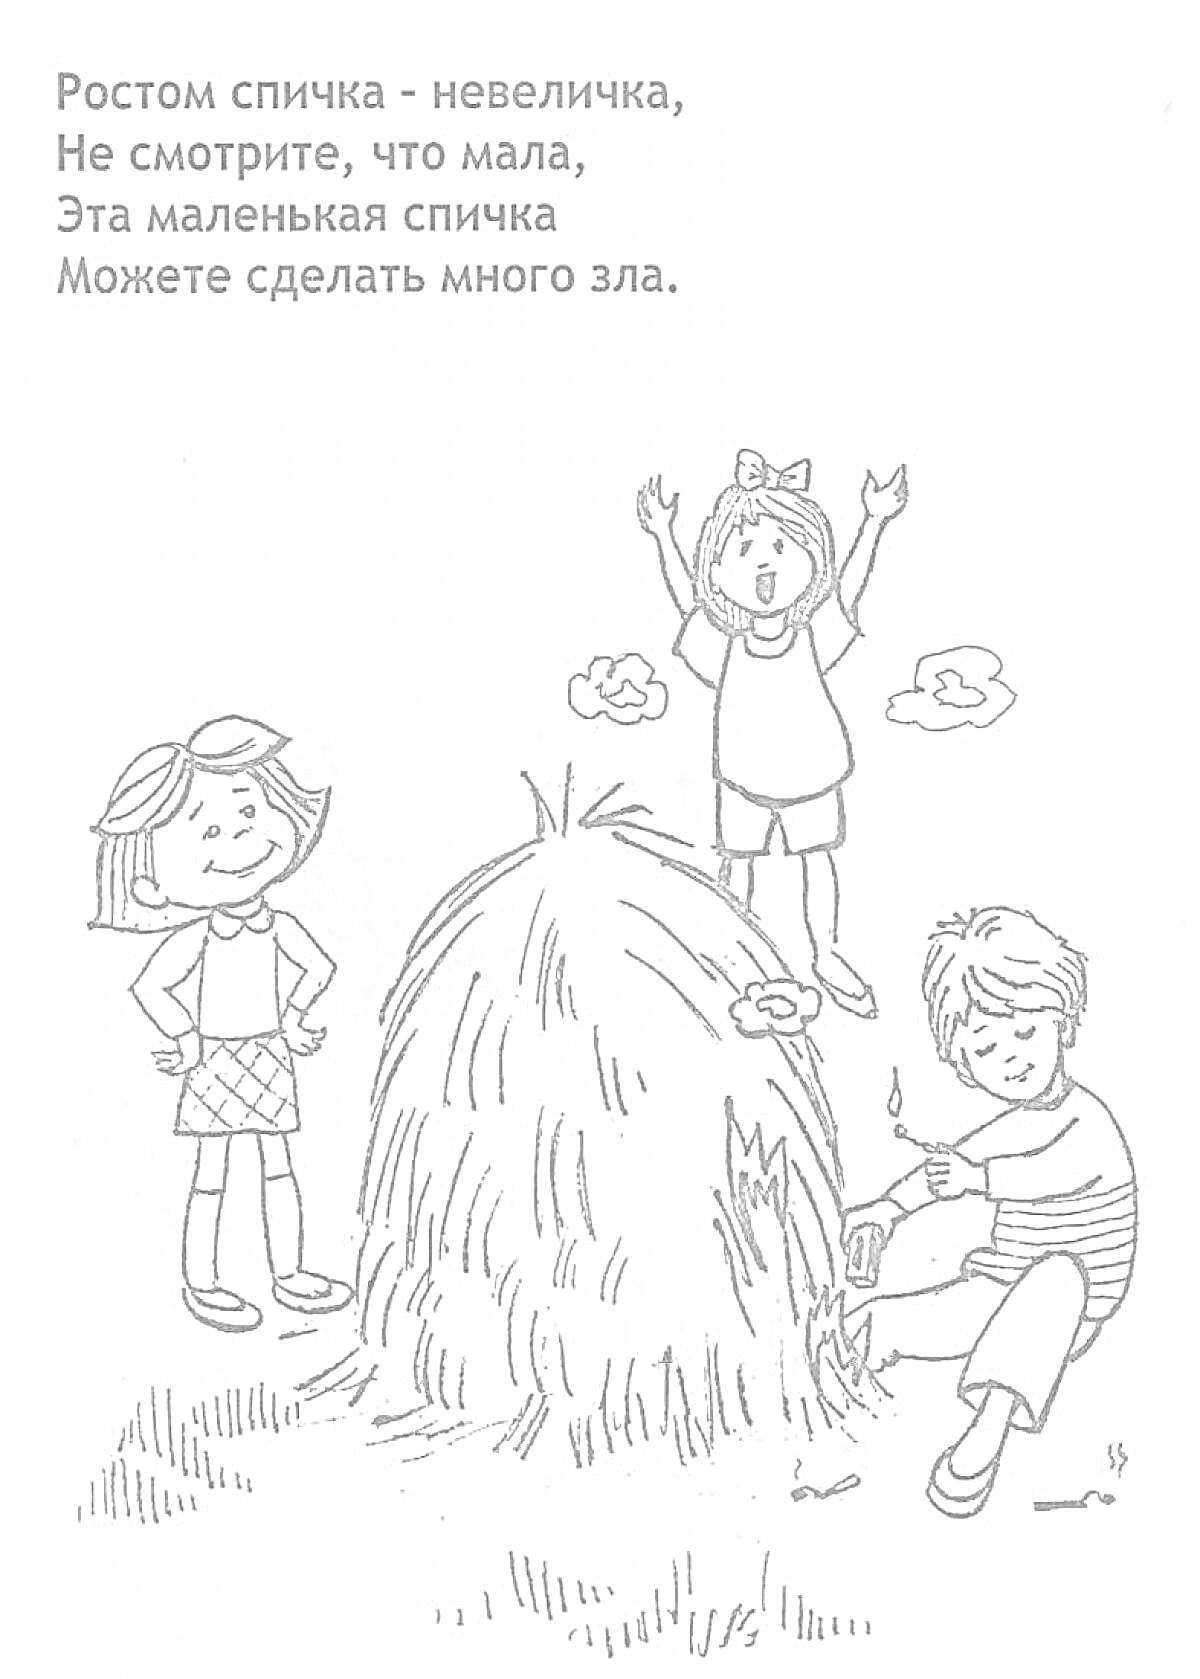 Дети возле костра из сена, мальчик пытается поджечь сено спичками, девочка с заколками смотрит, другая девочка машет руками